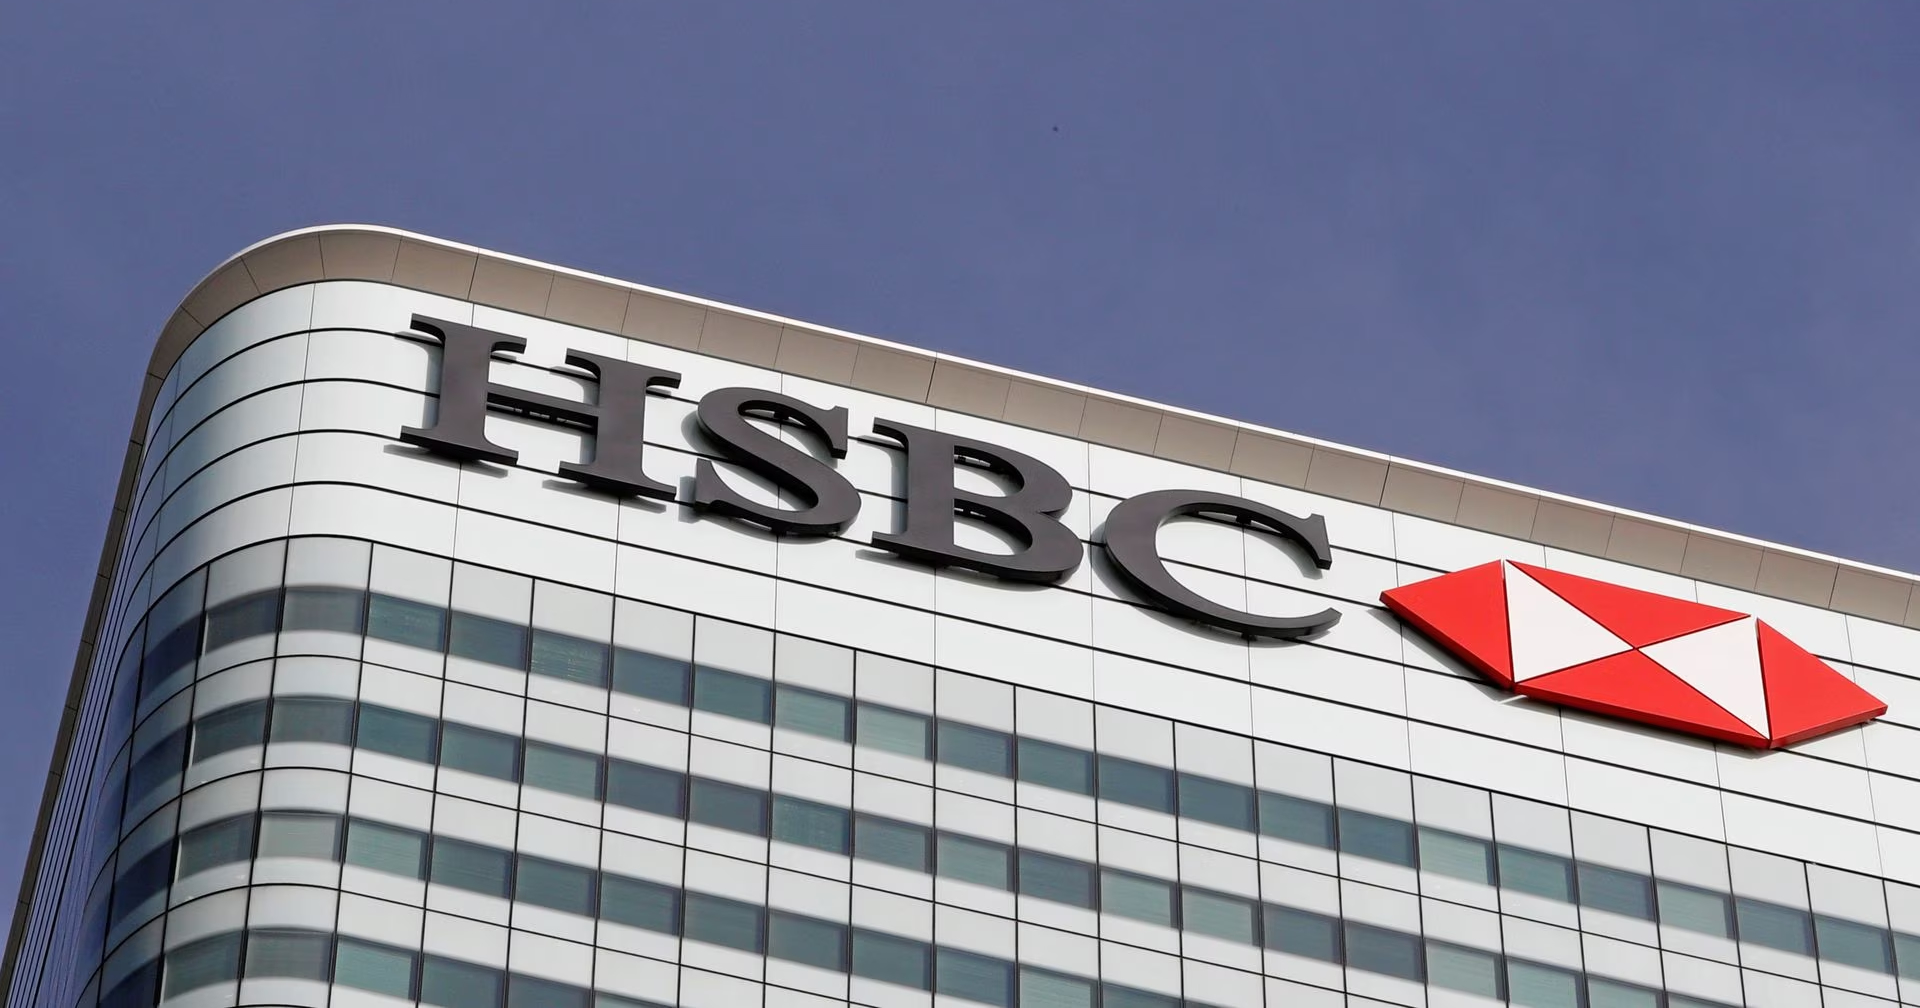 HSBC ประกาศซื้อกิจการ Silicon Valley Bank ในอังกฤษ ด้วยเงิน 1 ปอนด์